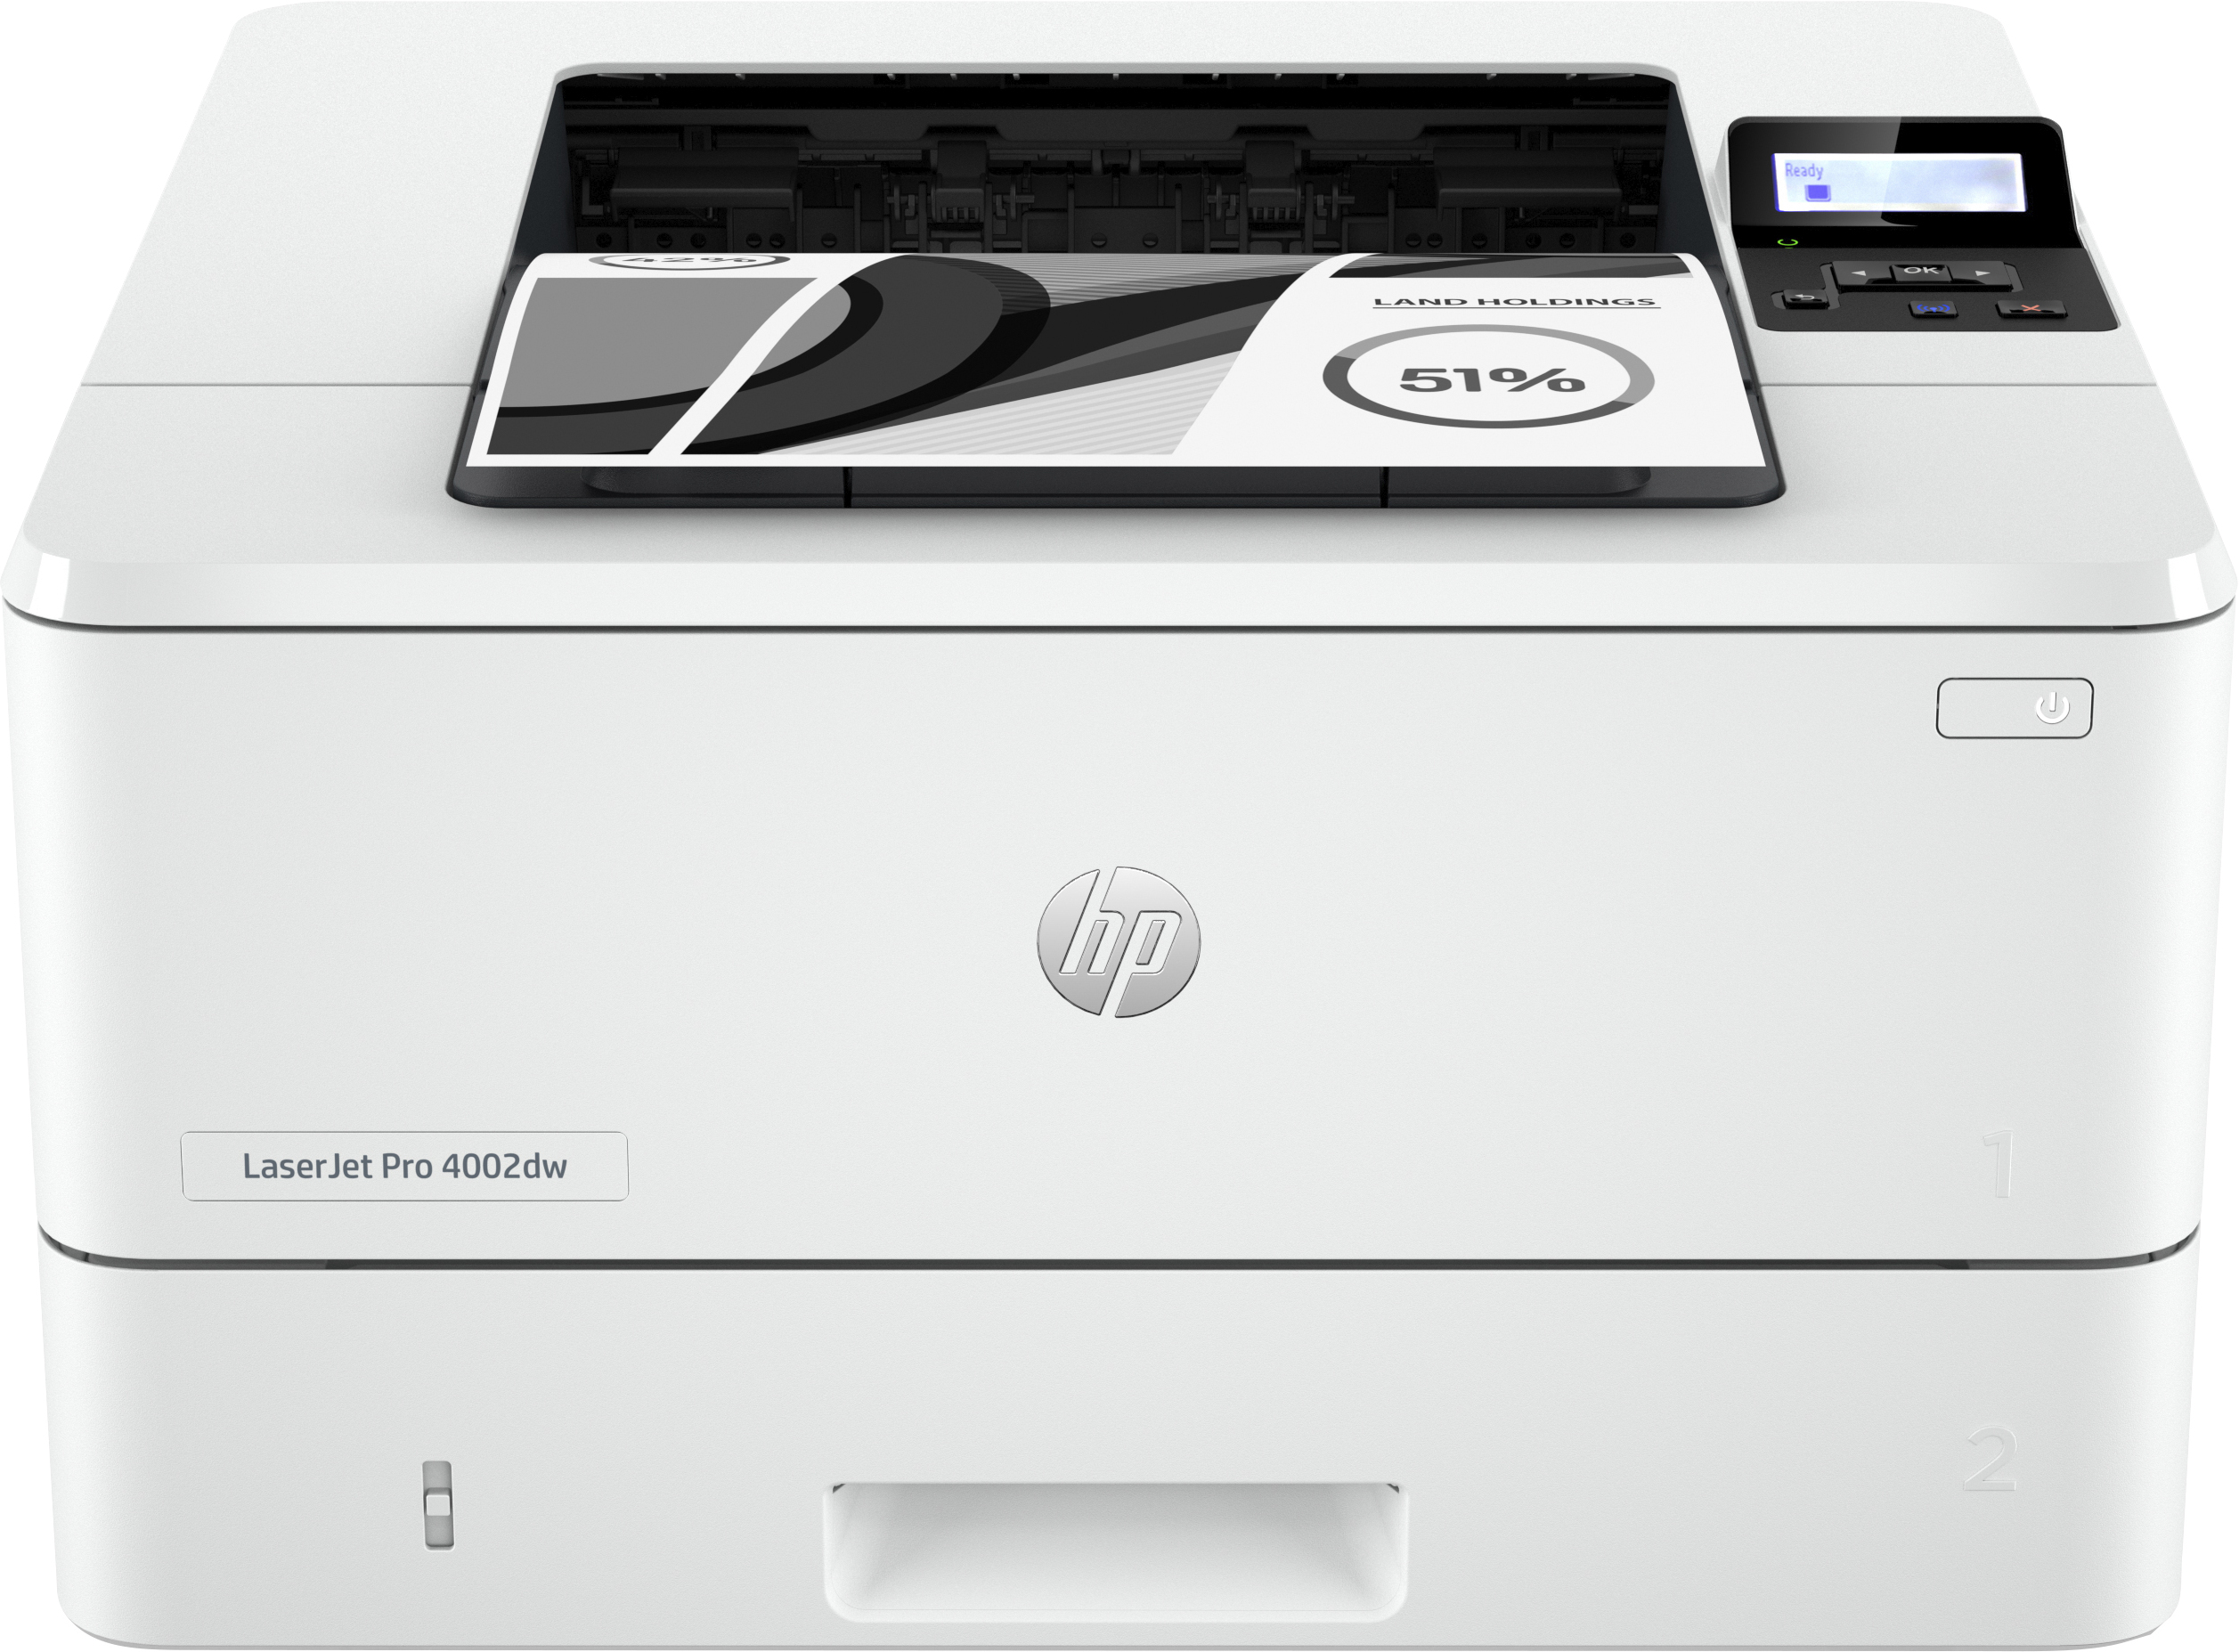 HP HP LaserJet Pro 4002dw printer, Zwart-wit, Printer voor Kleine en middelgrote ondernemingen, Print, Dubbelzijdig printen; Eerste pagina snel gereed; Compact formaat; Energiezuinig; Optimale beveiliging; Dual-band Wi-Fi